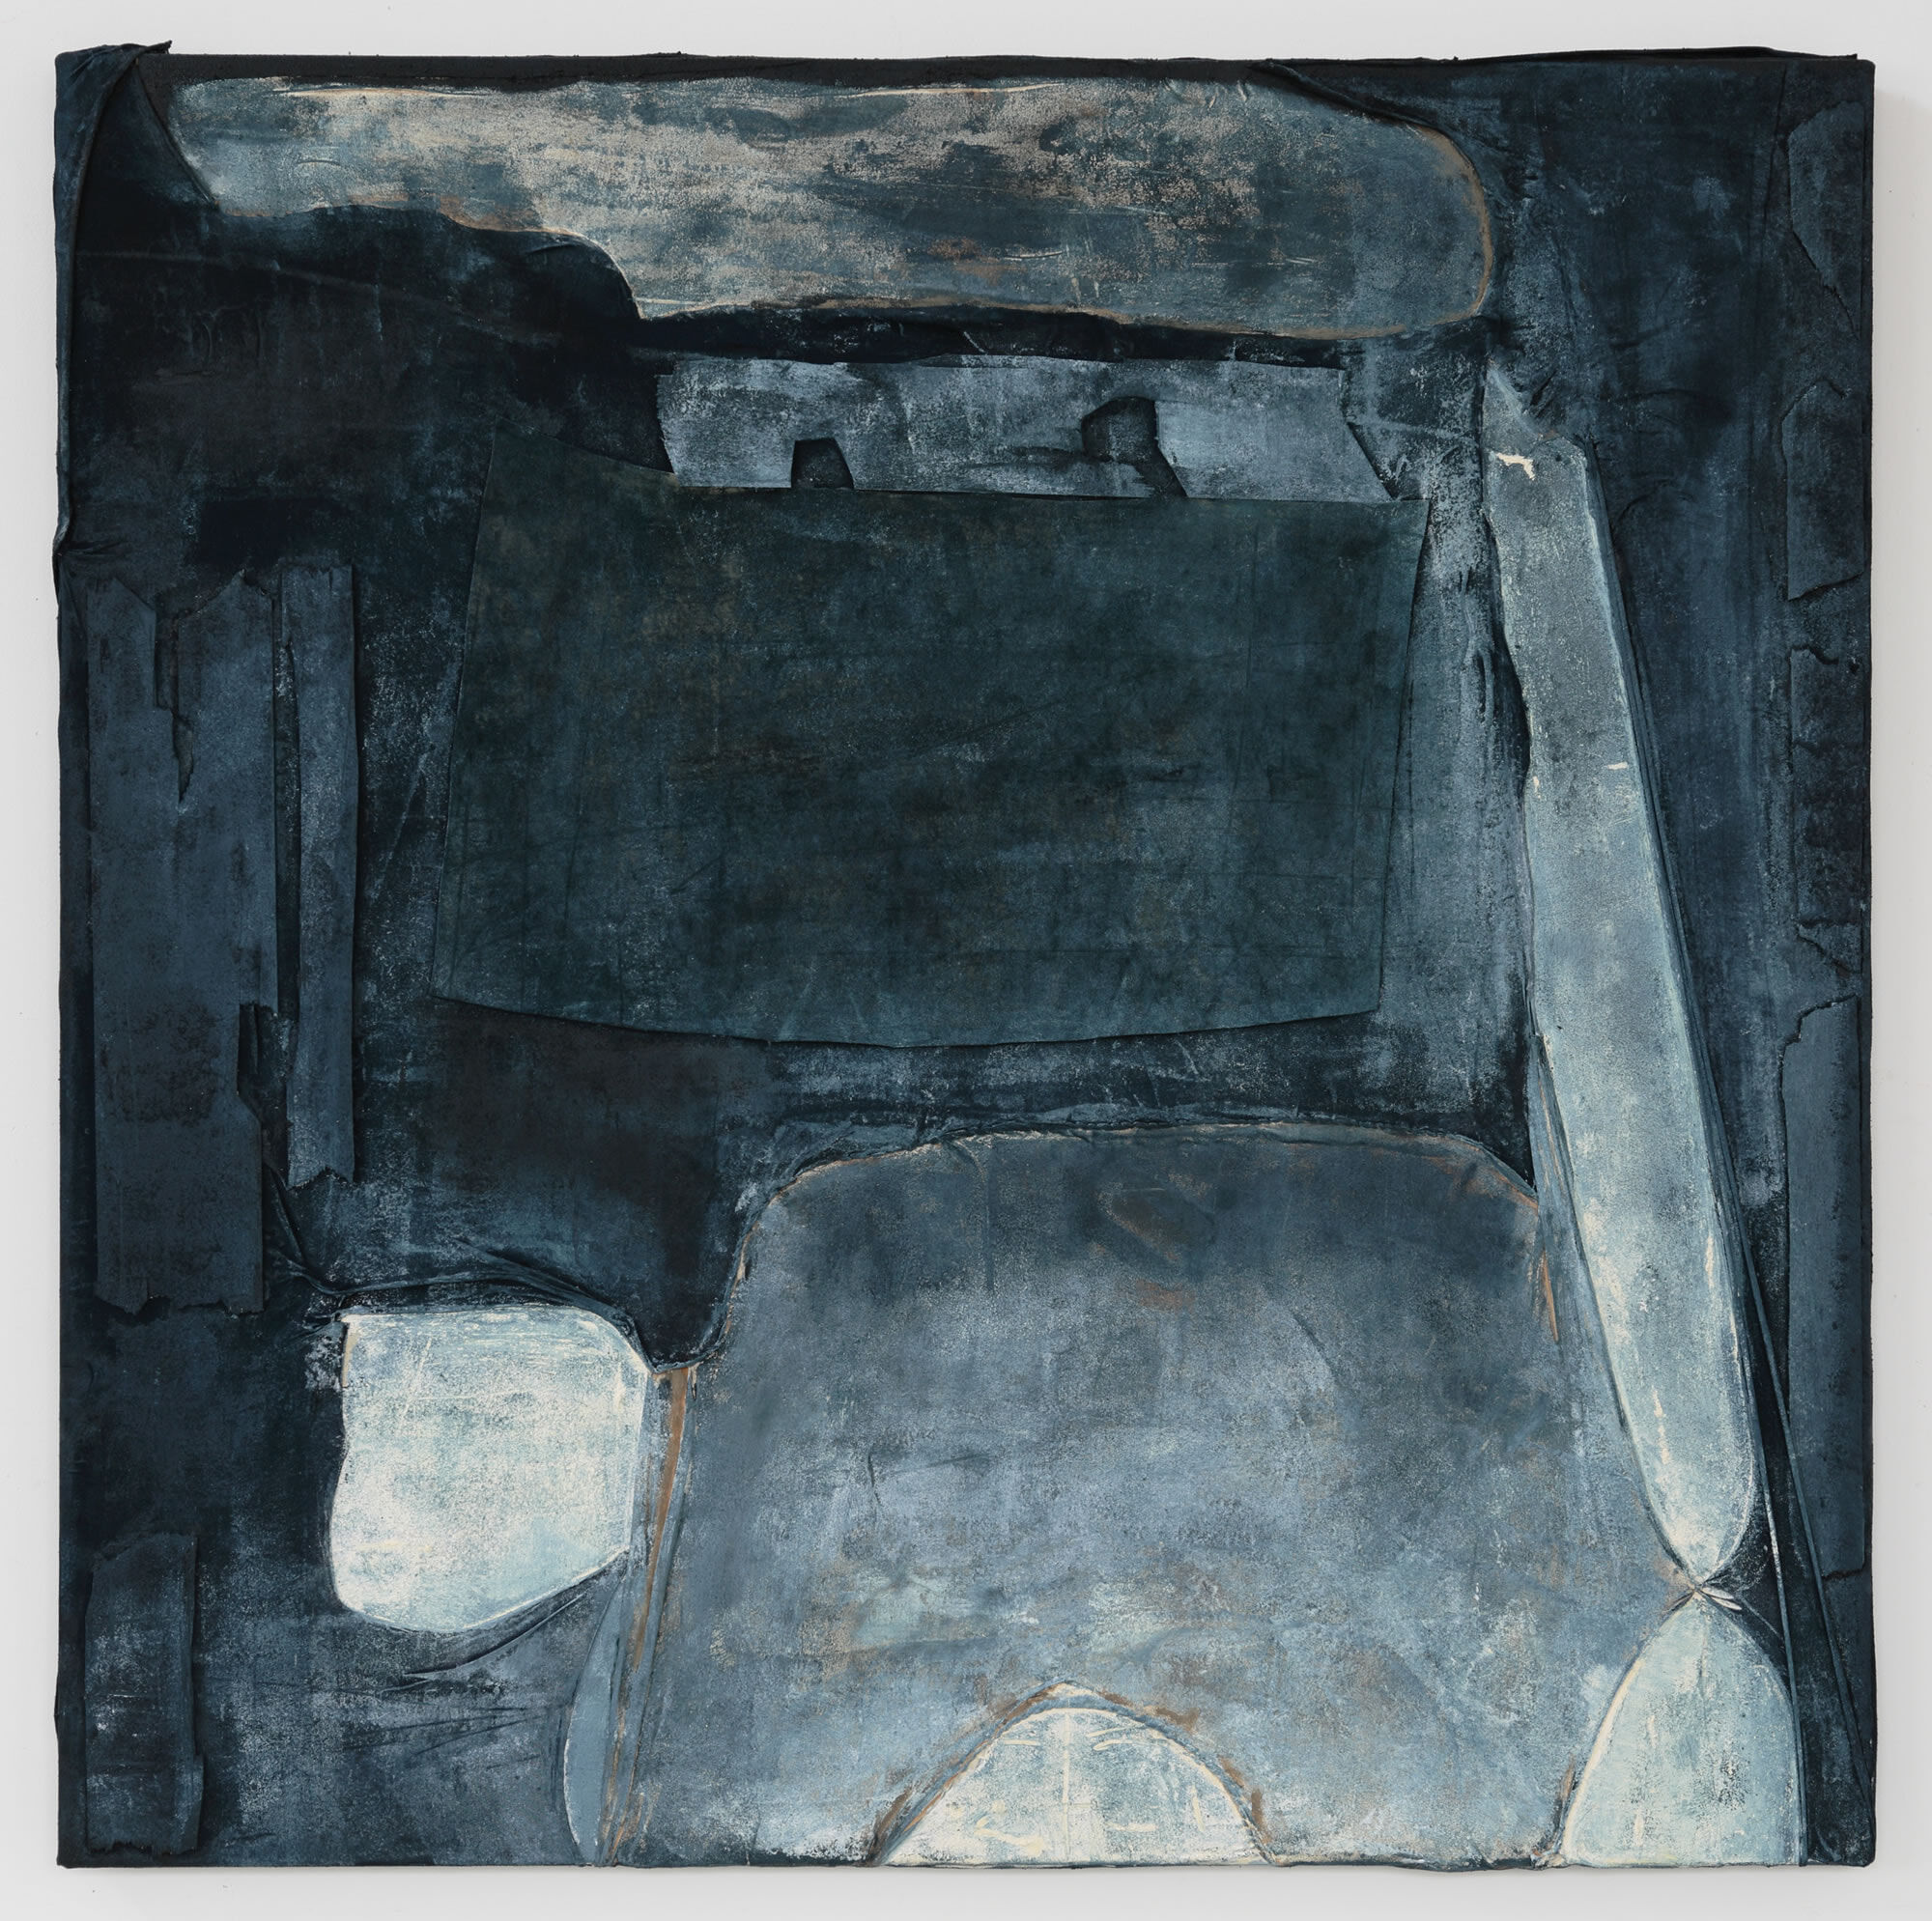 Anna Caione Gesto Blu,2018, fabric _ Mixed media on canvas, 100cm x 100cm